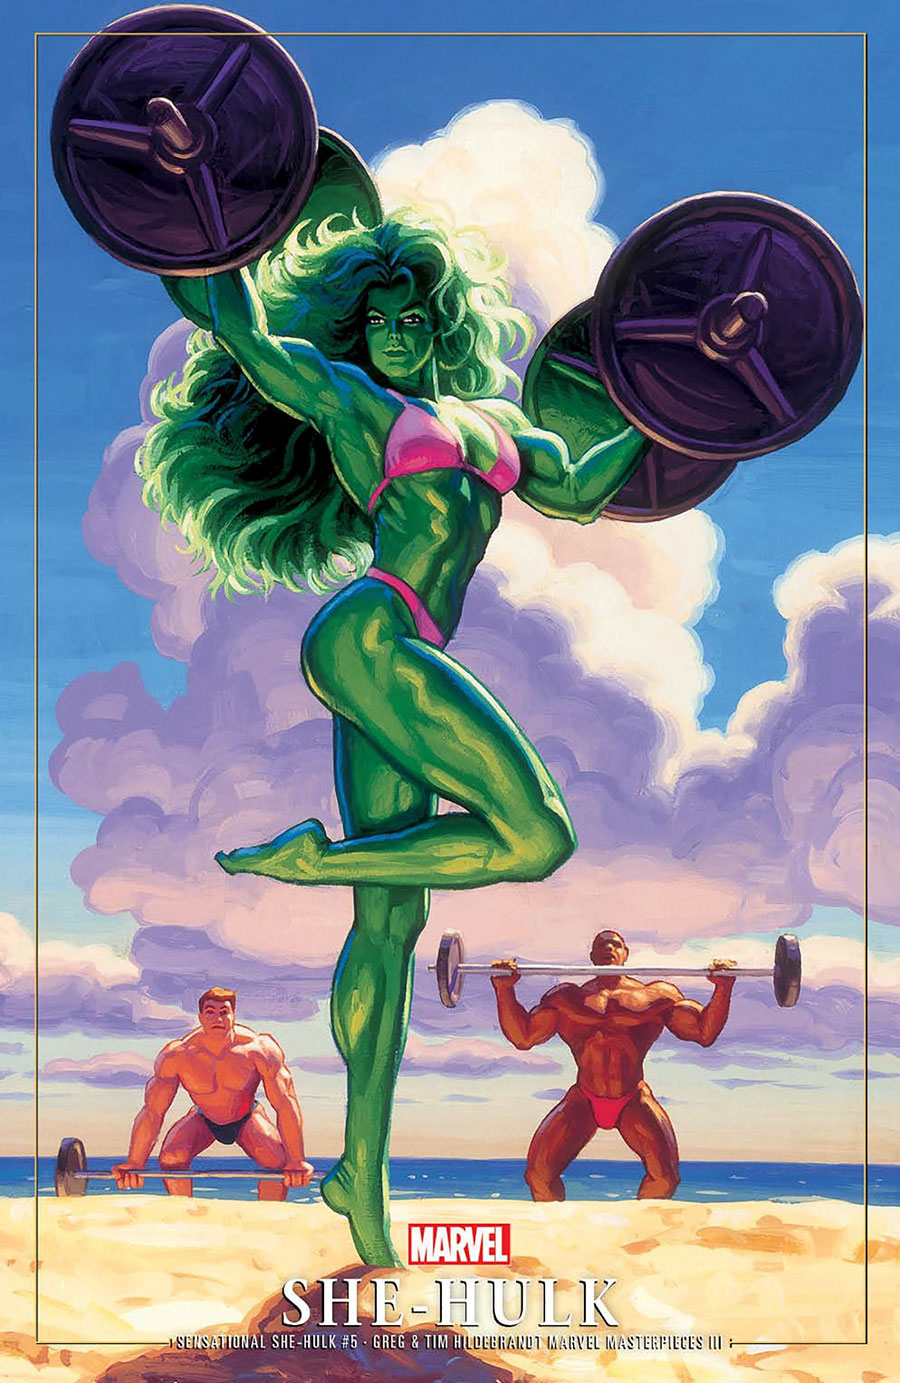 Sensational She-Hulk Vol 2 #5 Cover C Variant Greg Hildebrandt & Tim Hildebrandt Marvel Masterpieces III She-Hulk Cover (Limit 1 Per Customer)